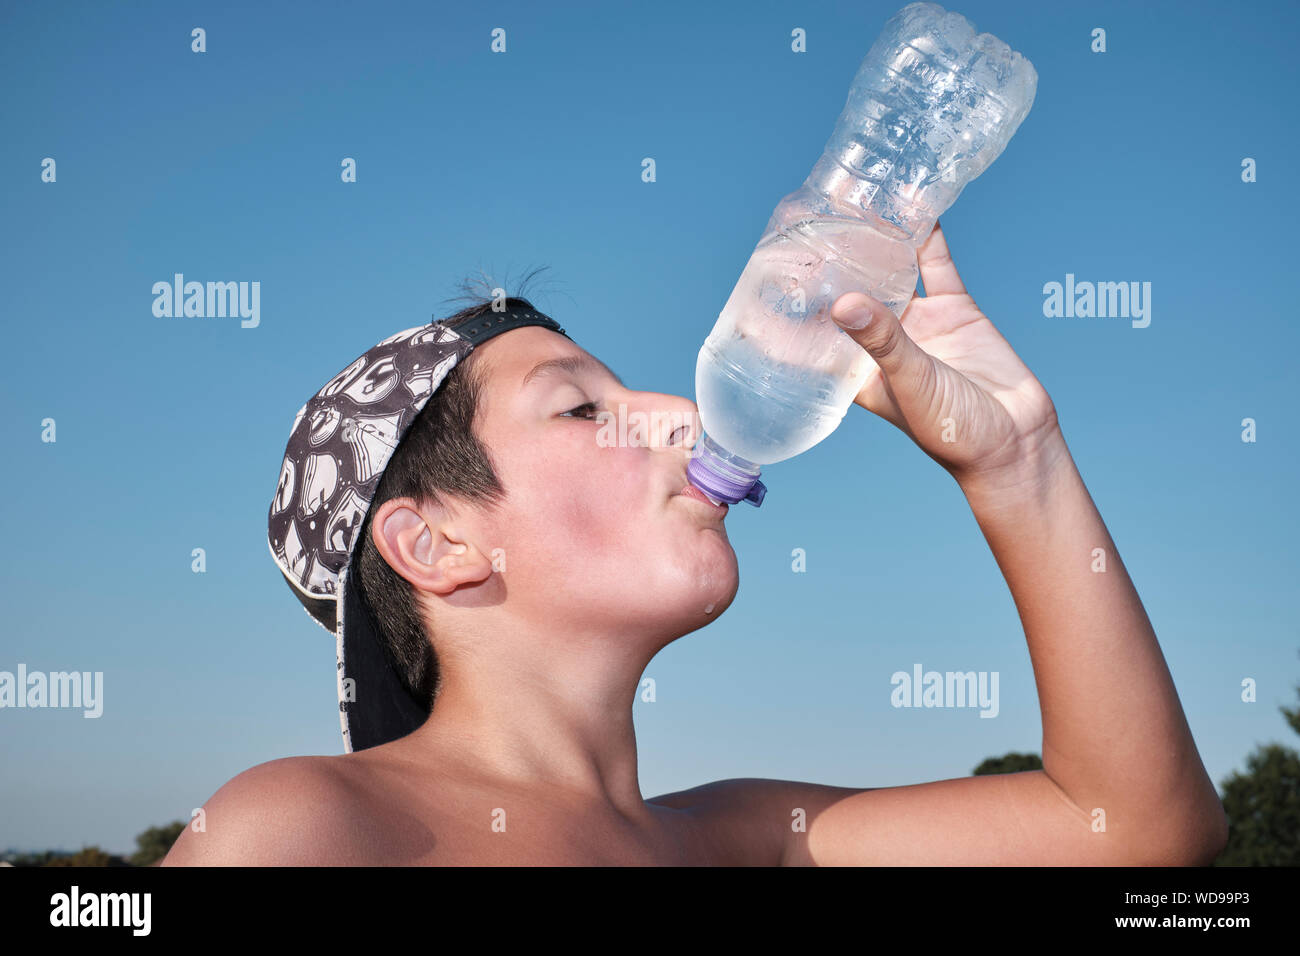 Junge, 11-12 Jahre alt, Getränke eiskaltes Wasser aus der Plastikflasche an einem heißen Sommertag Stockfoto